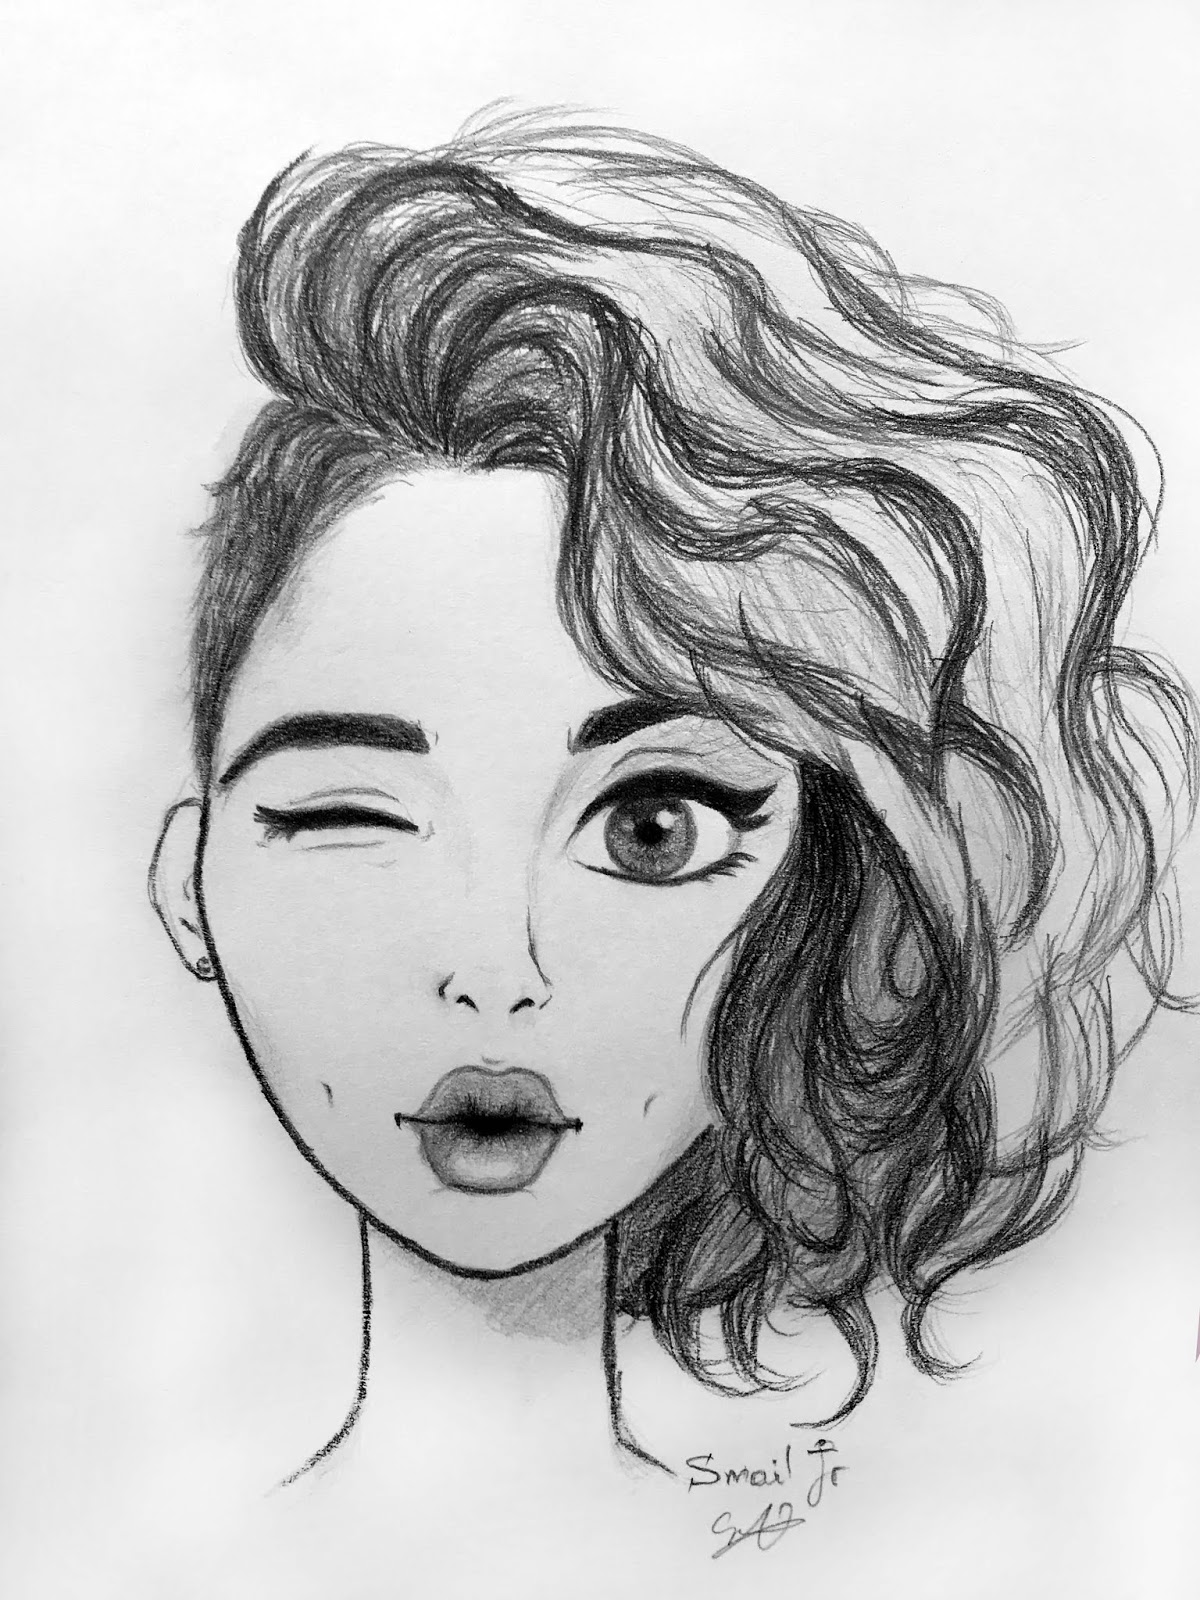 Cartoon girl face pencil sketch - Smail Jr